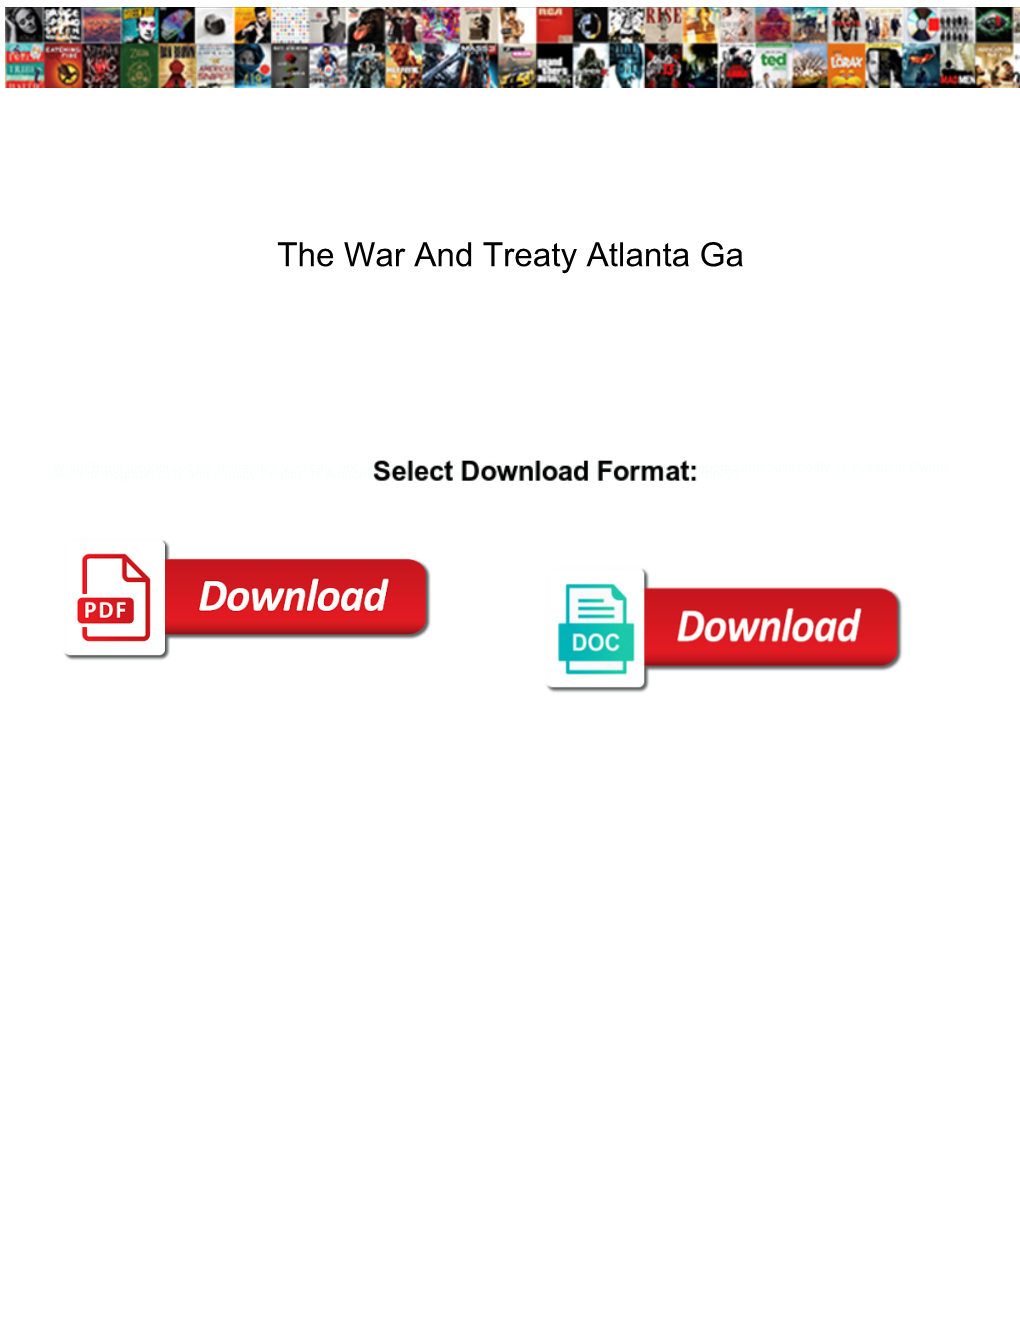 The War and Treaty Atlanta Ga